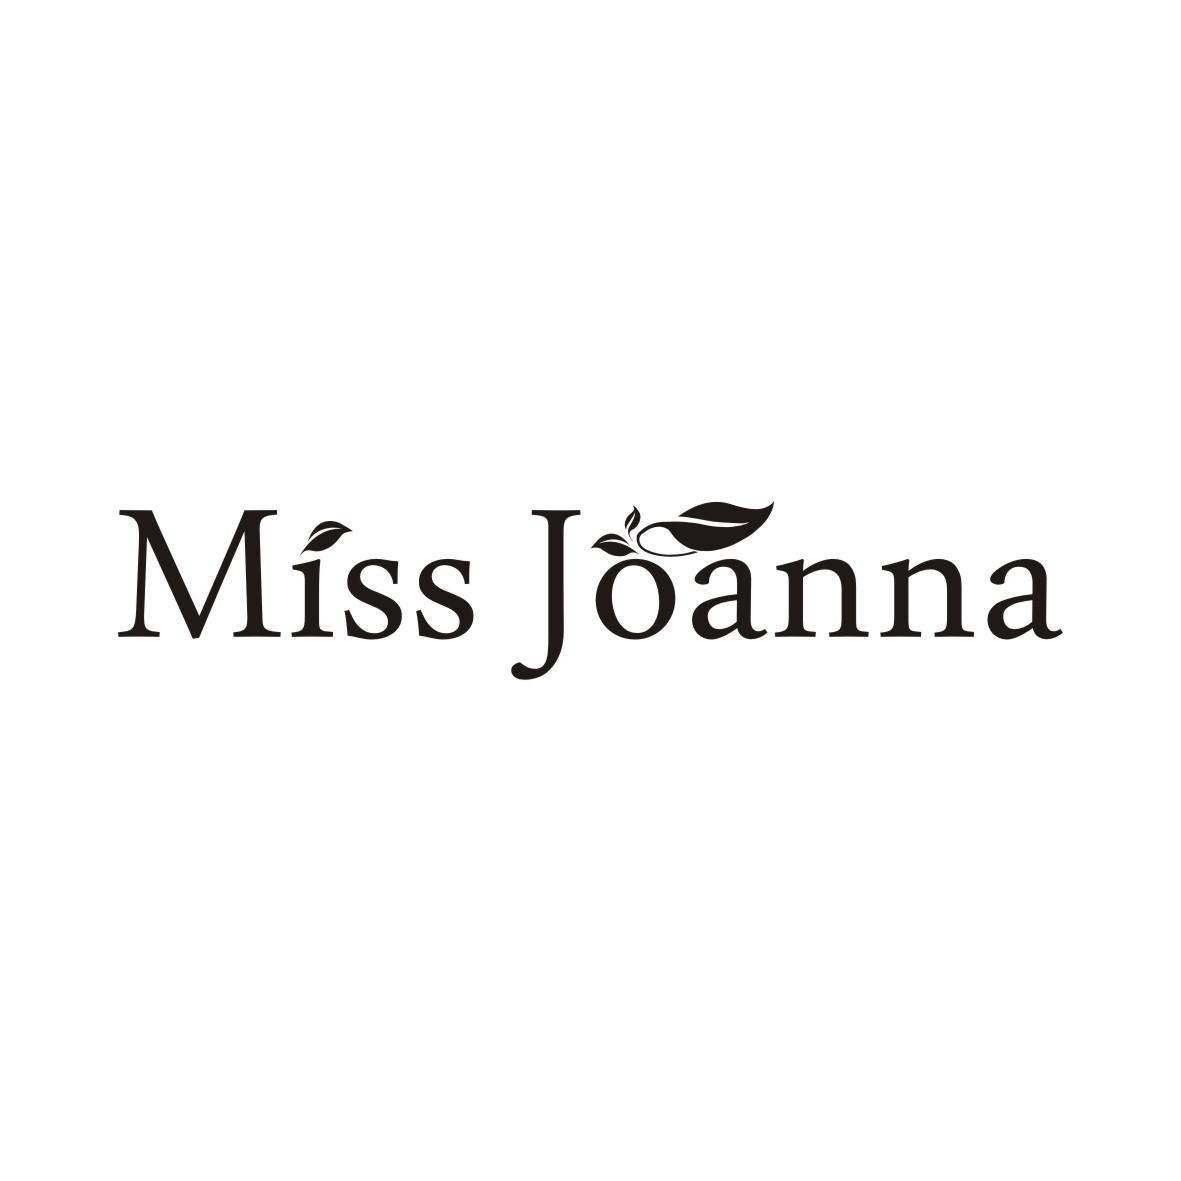 MISS JOANNA